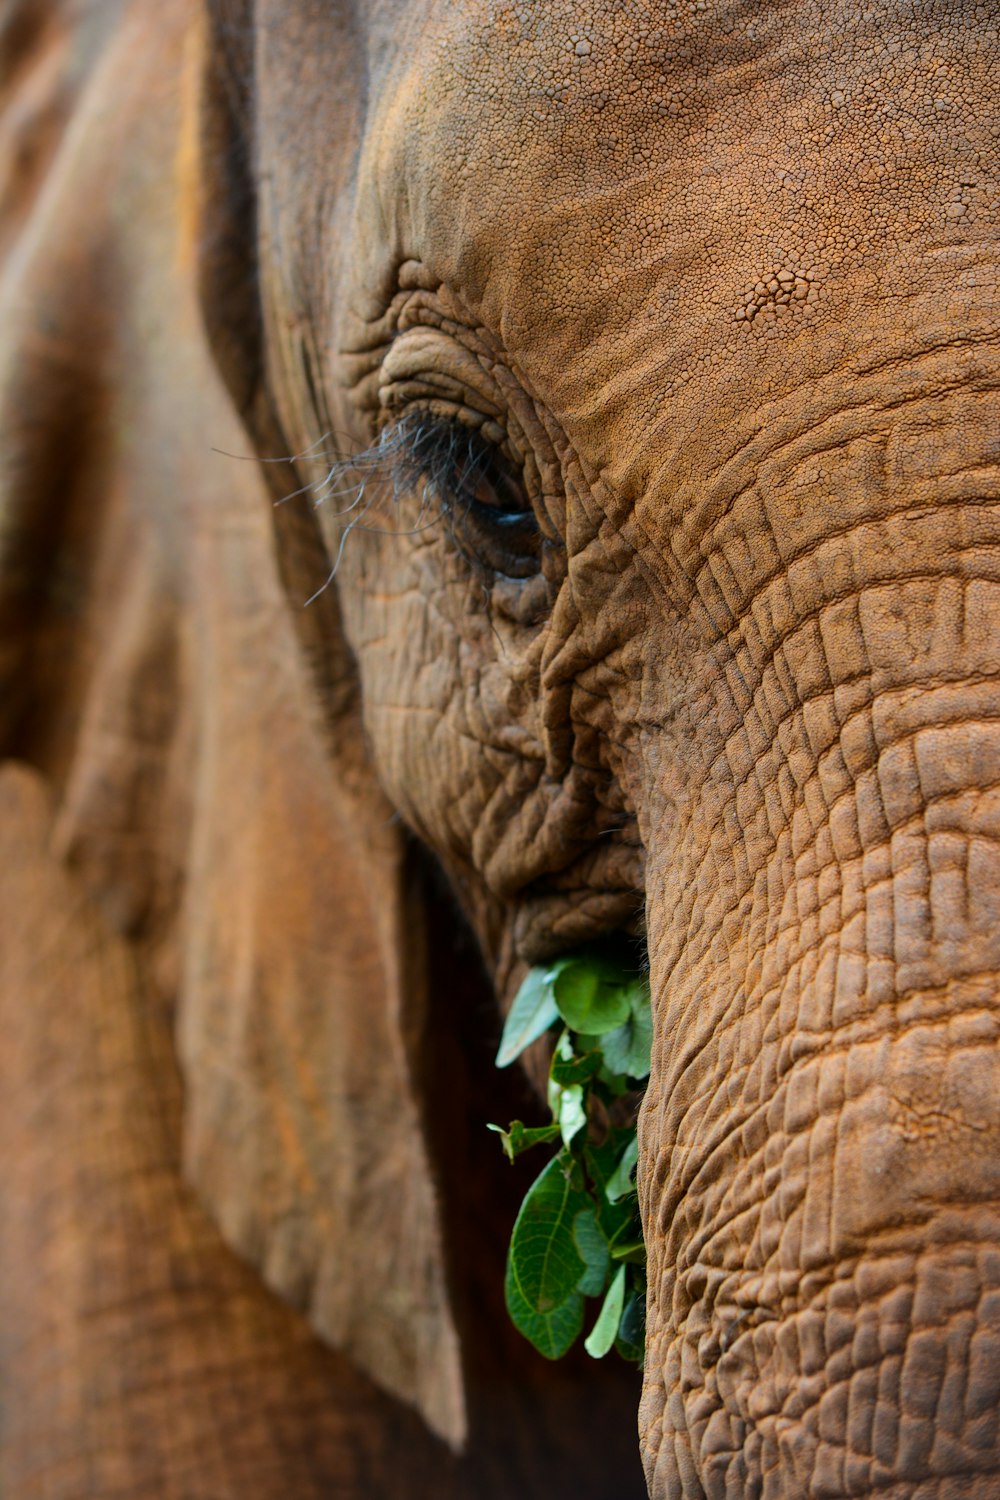 Eine Nahaufnahme eines Elefanten mit einer Pflanze im Maul